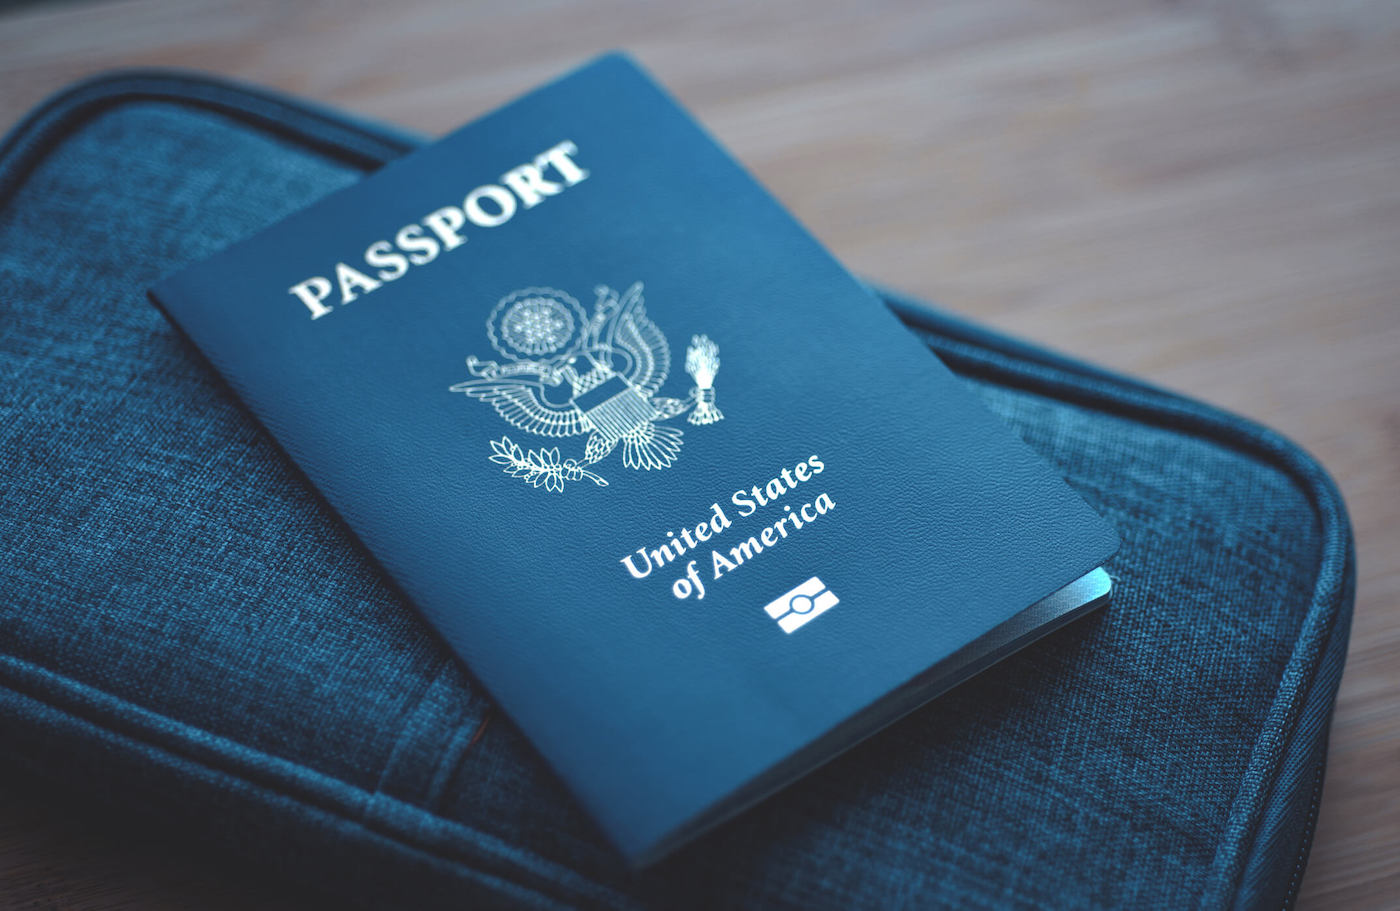 Co byste měli dělat, pokud vás váš zaměstnavatel požádá o předání pasu?